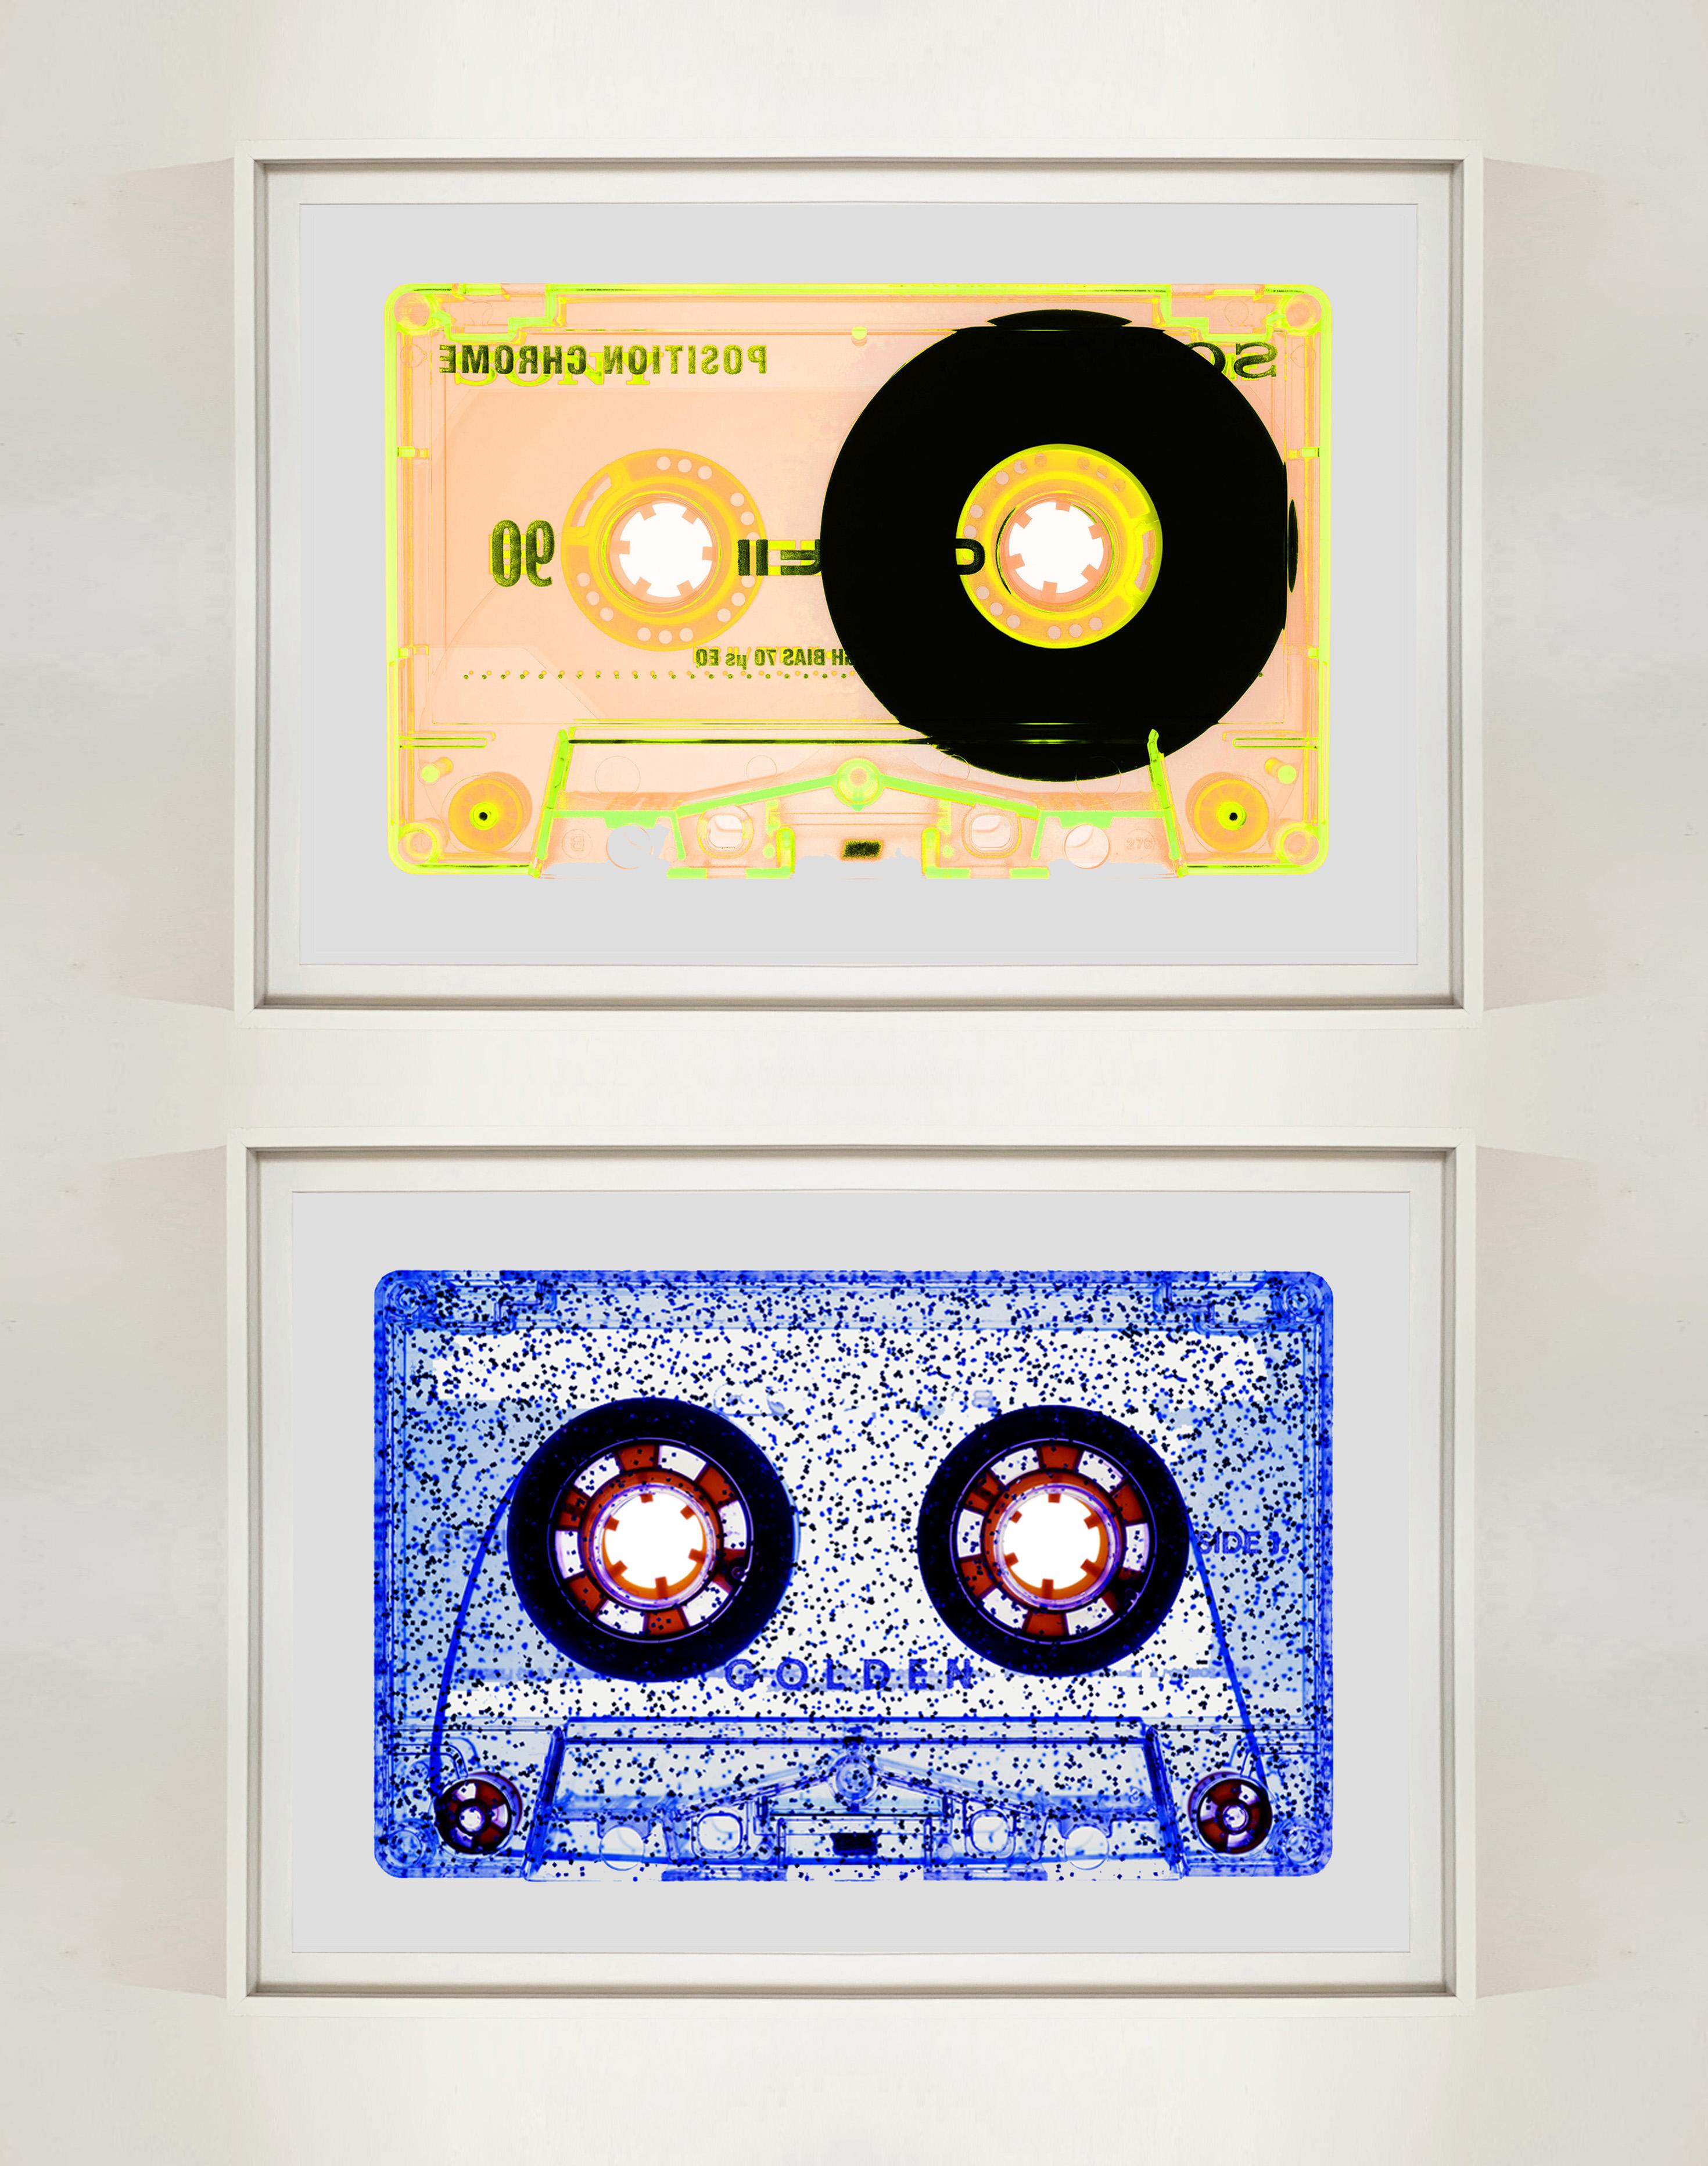 All That Glitters is Not Golden (Blue), aus der Heidler & Heeps Tape Collection - The B Sides.
Die Kollaborationen von Heidler & Heeps sind kreative Repräsentationen von Natasha Heidler und Richard Heeps' persönlicher Vergangenheit und ihrer